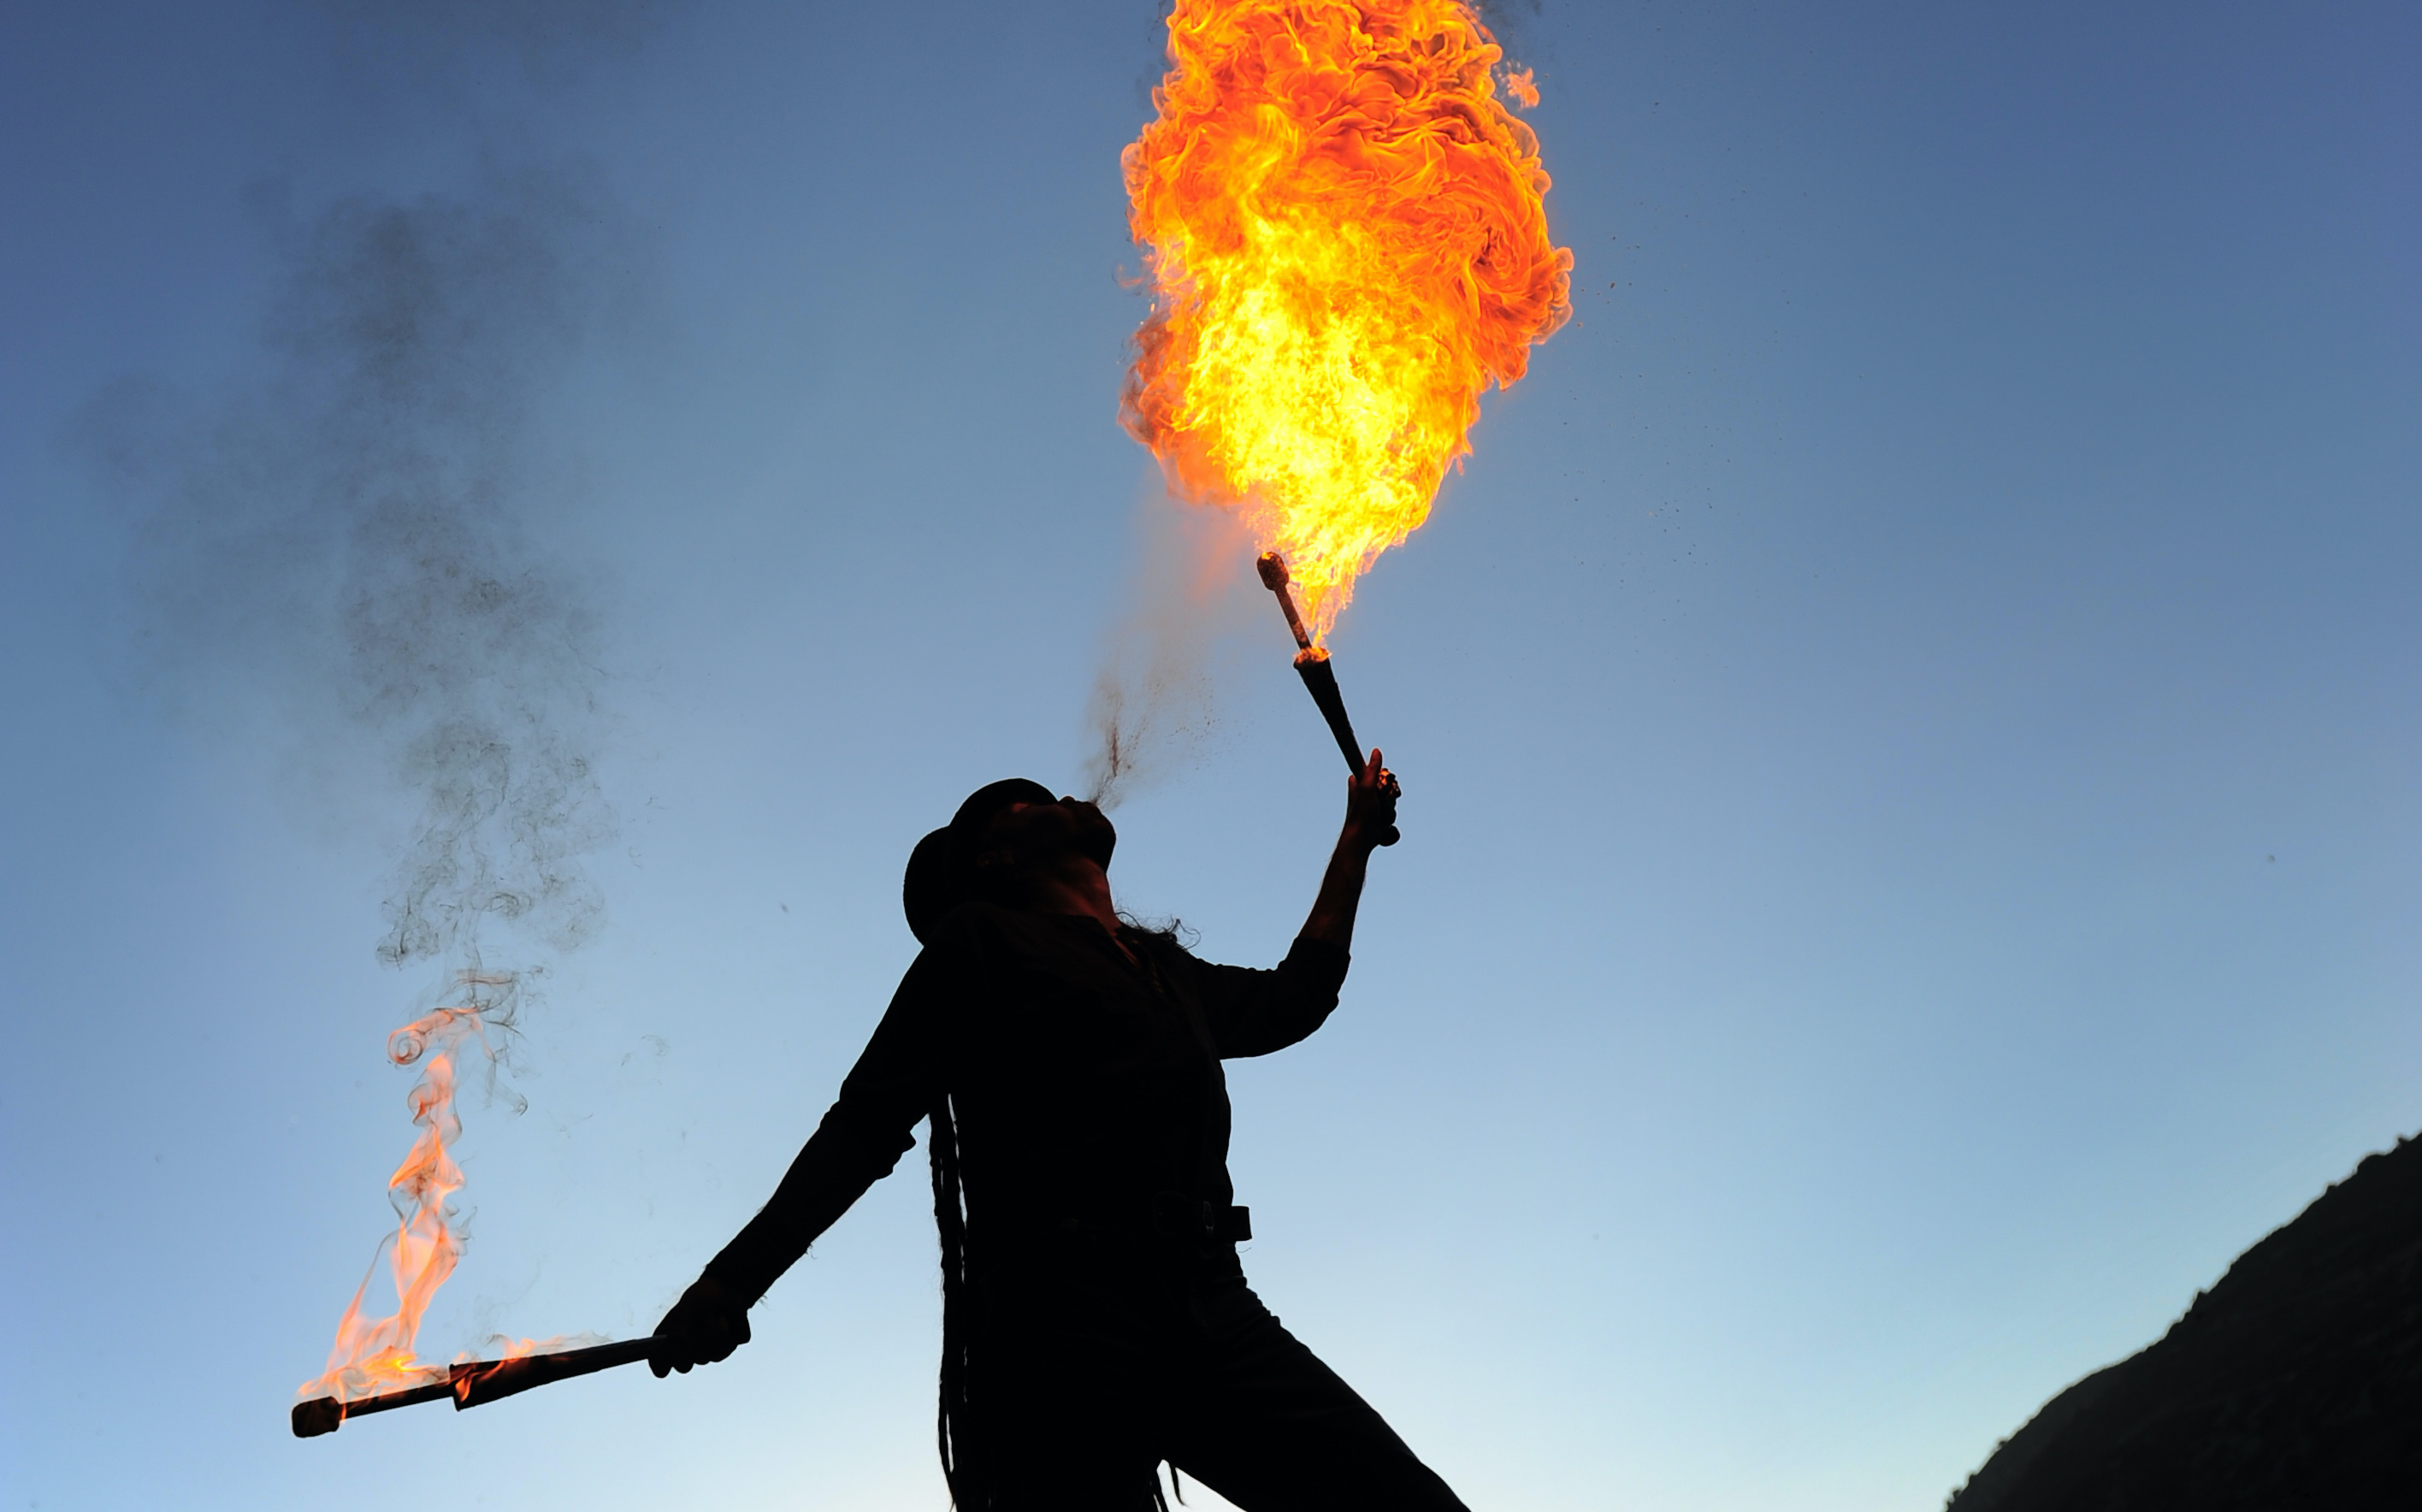 Le cracheur de feu vaporise le liquide inflammable sur une flamme, ce qui engendre des vapeurs qui s’enflamment et forment une boule de feu. © Rémy Masseglia, Adobe Stock